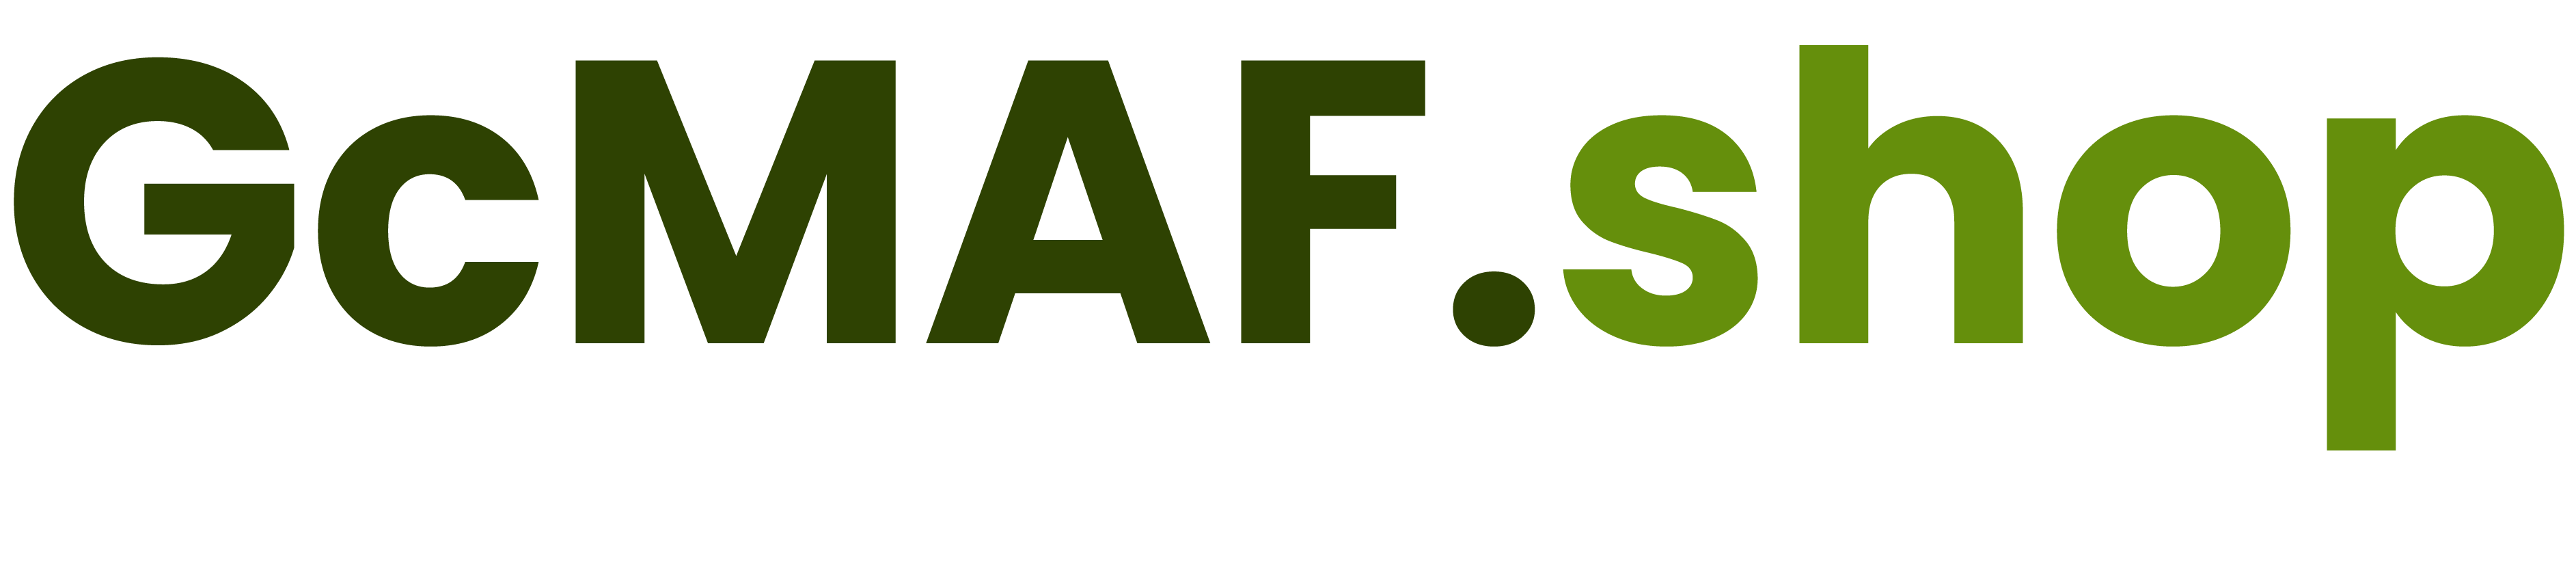 GcMAF Logo